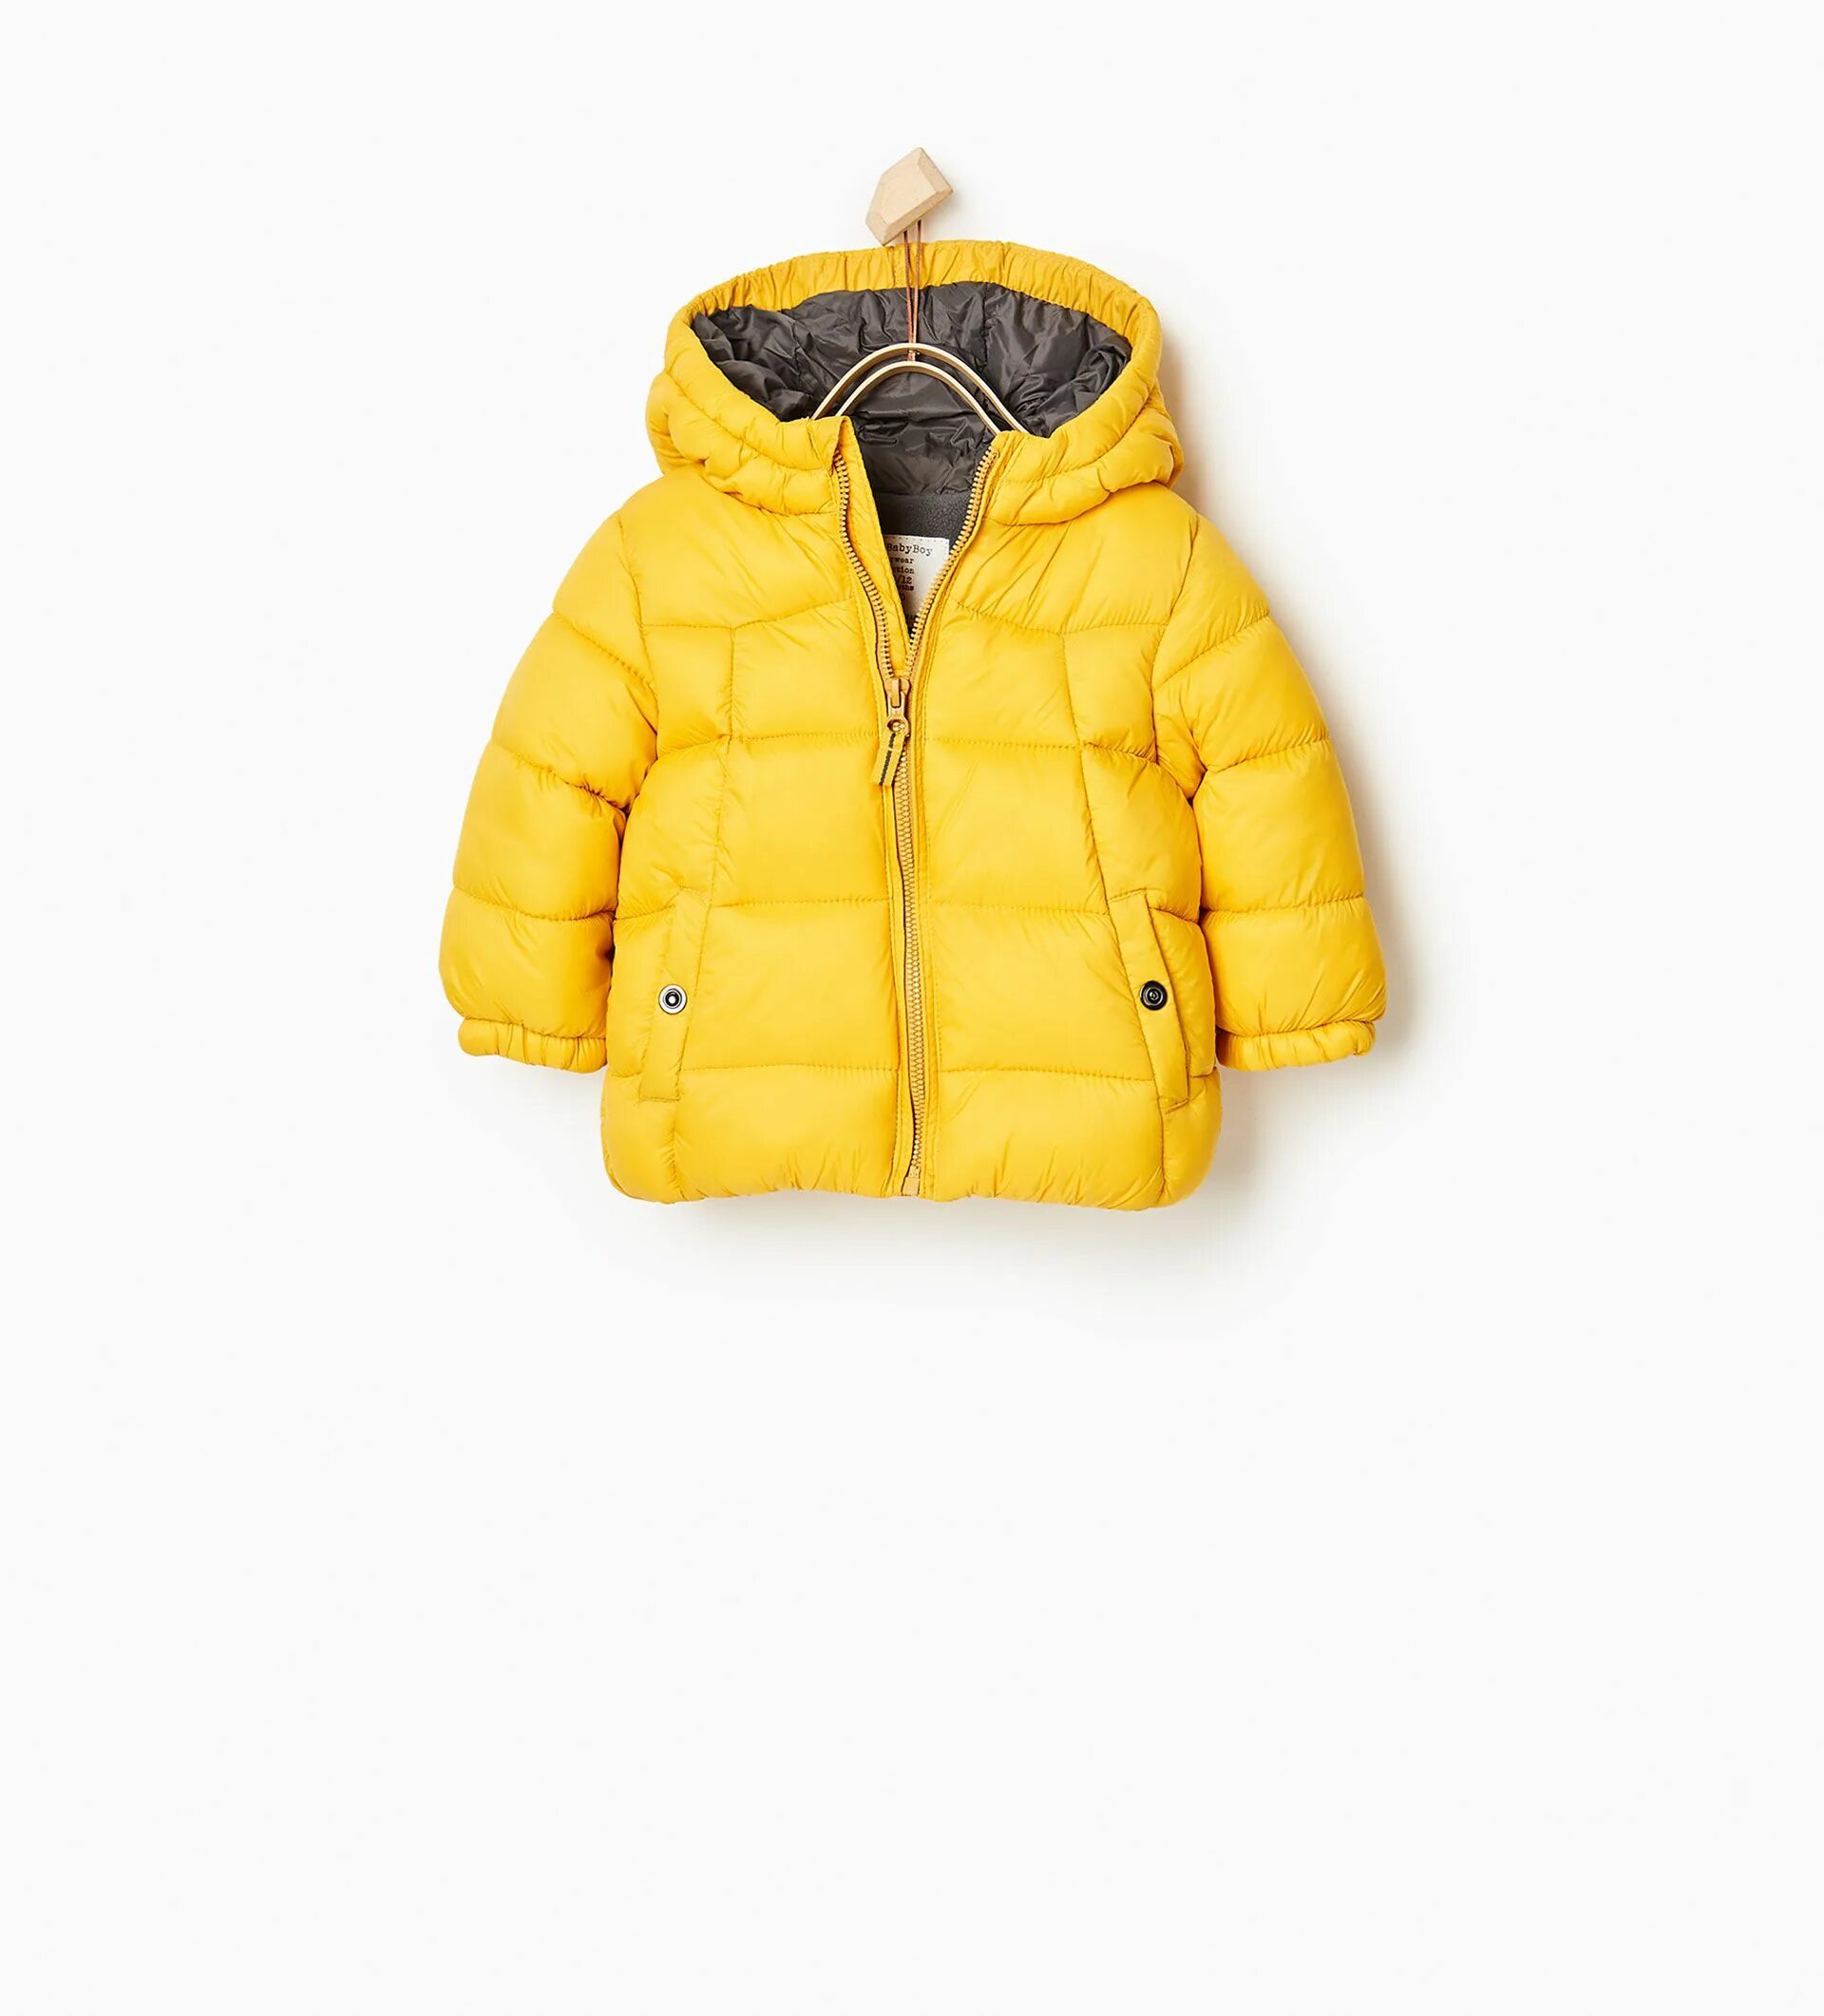 Желтая куртка для мальчика. Детская куртка Zara 5854575800. Стеганая куртка Zara детская.